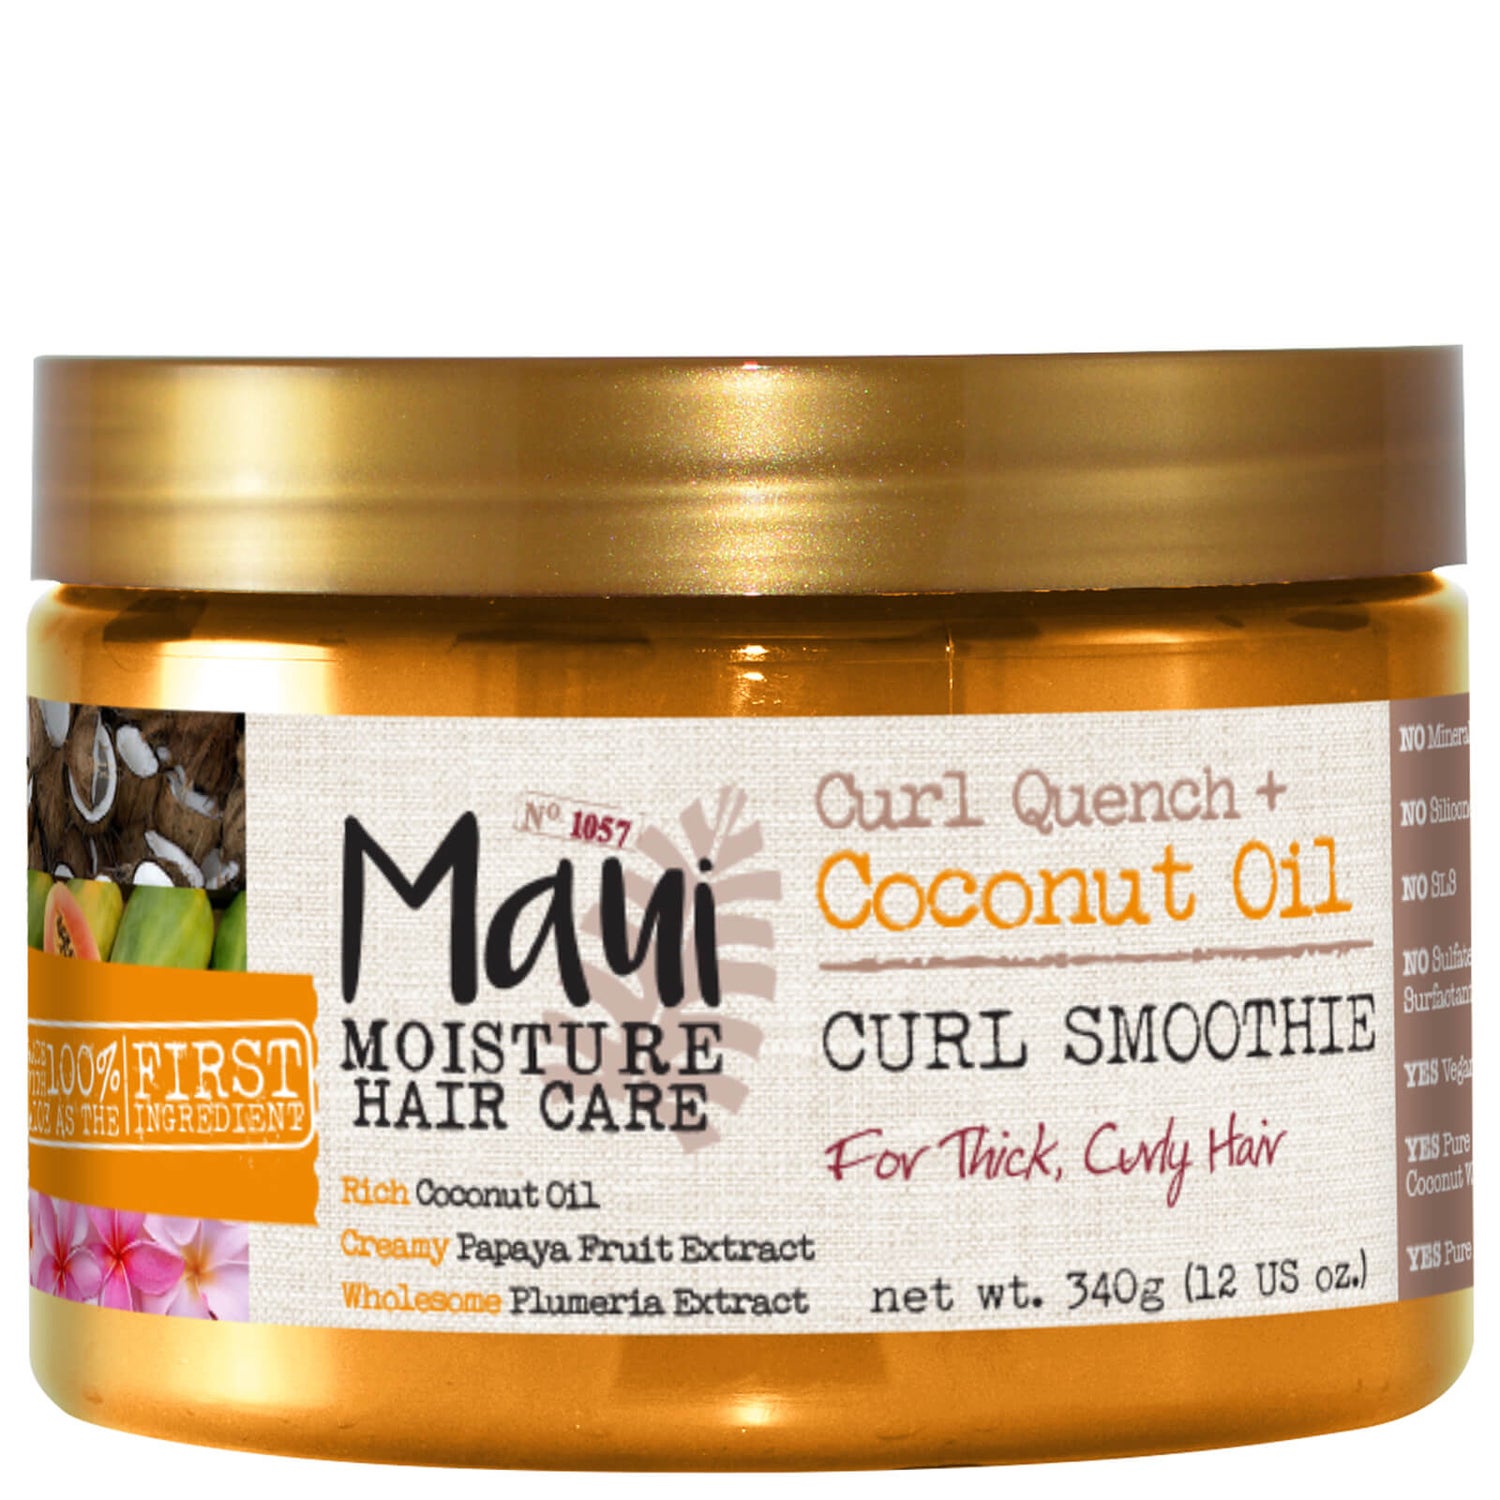 Maui Moisture Curl Quench+ Coconut Oil Hair Mask 340g